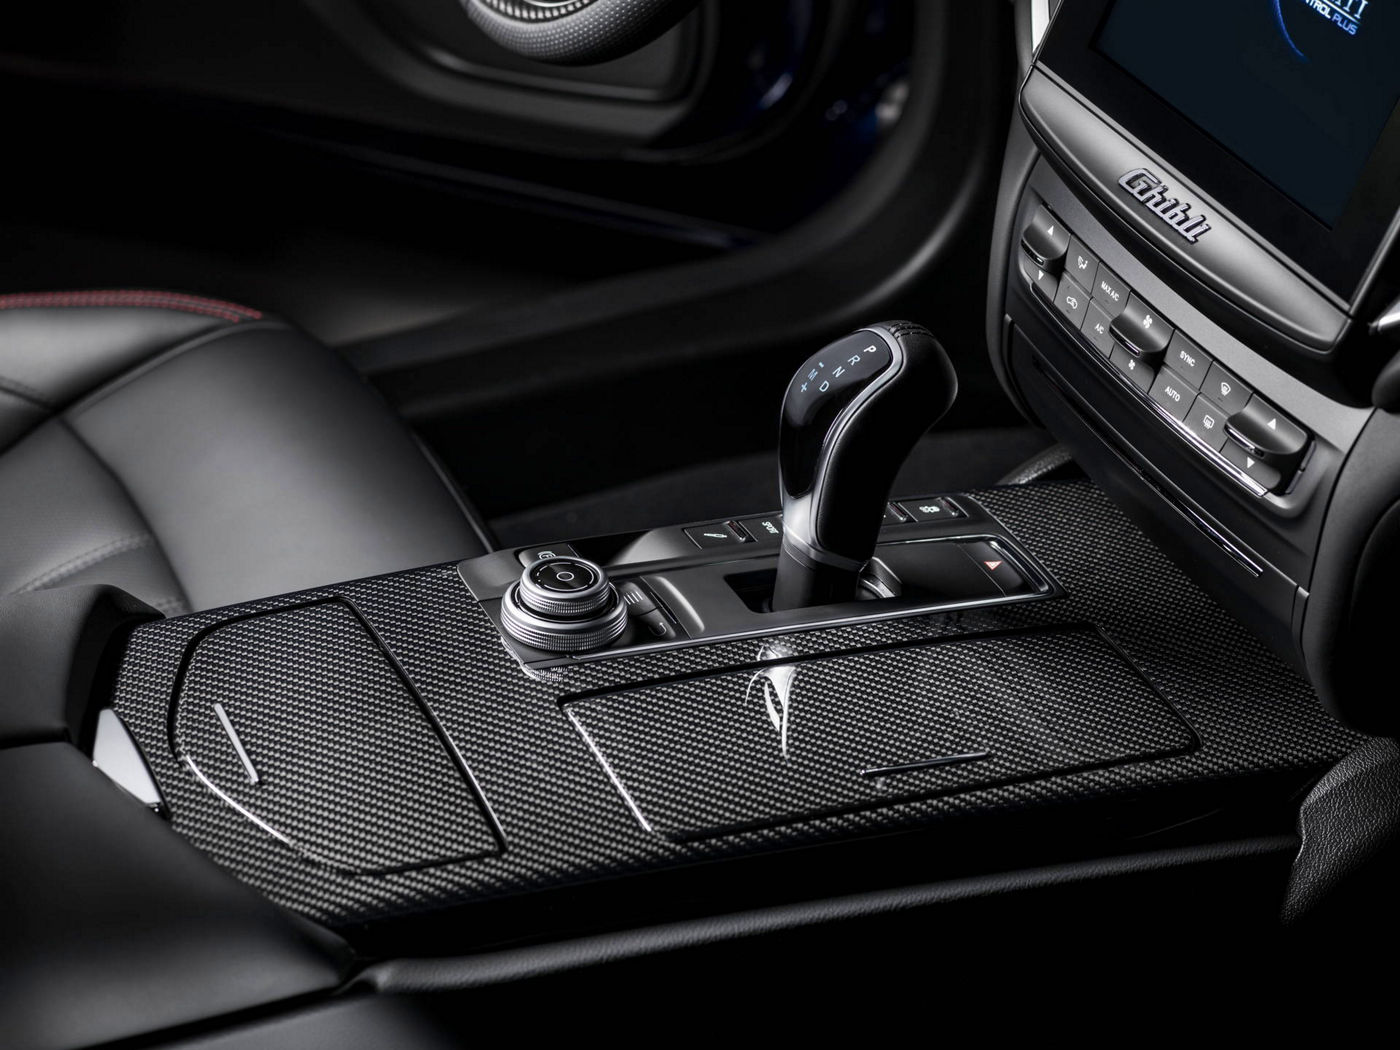 Maserati Ghibli 2018 - berline luxe - équipement intérieur - boîtier de vitesse